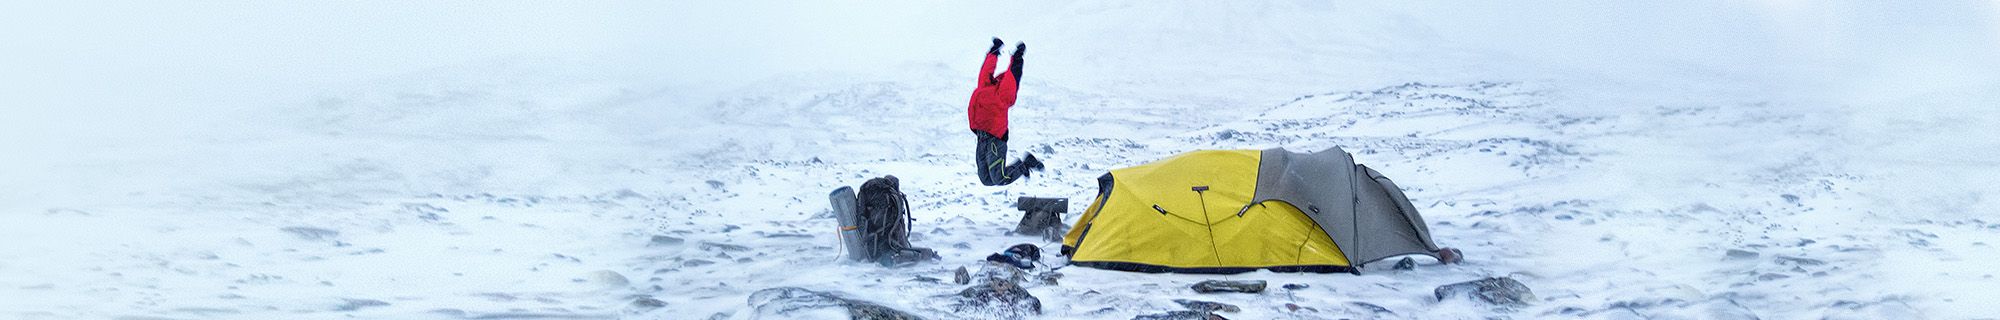 Person springt vor Zelt auf Berg